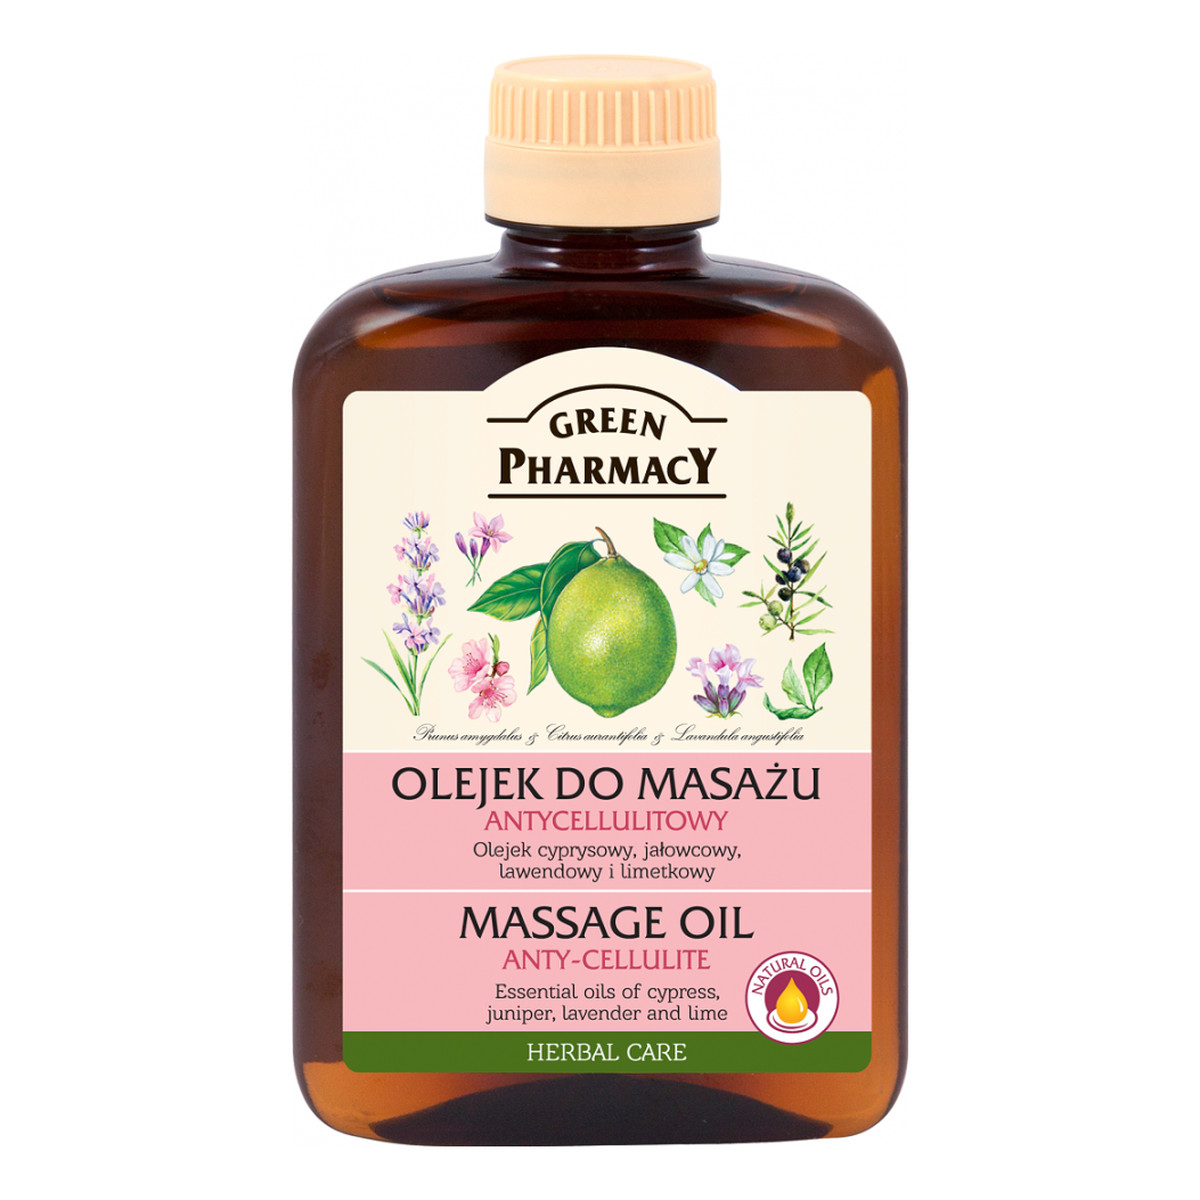 Green Pharmacy Olejek do masażu antycellulitowy 200ml